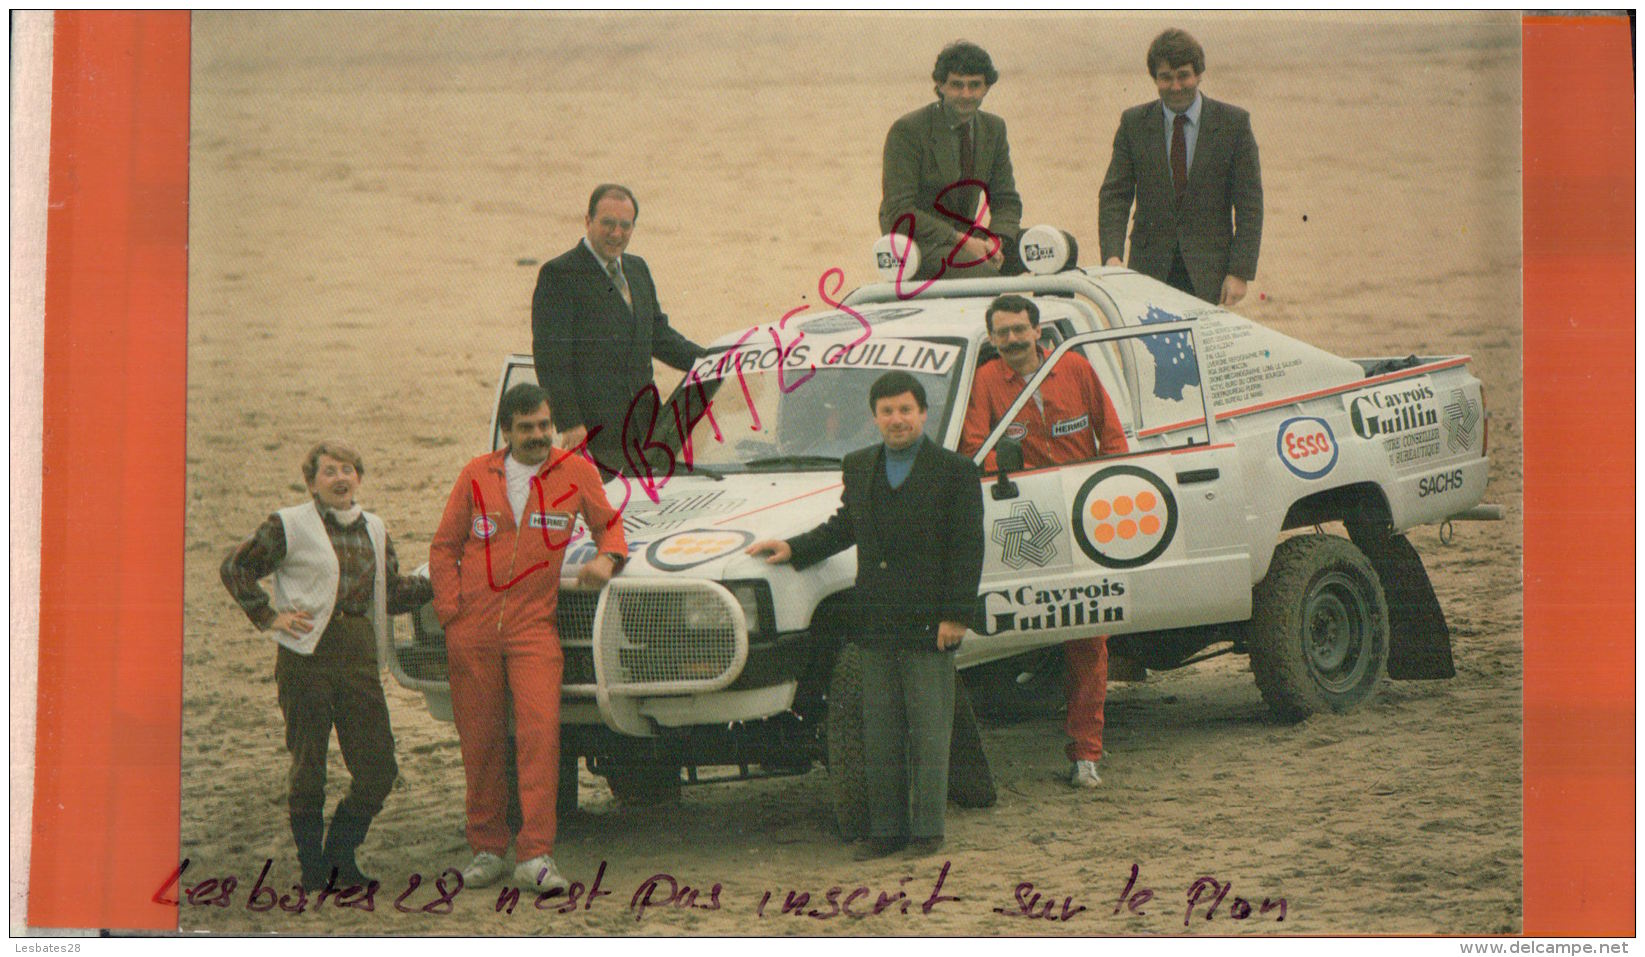 CPSM 28  CHARTRES  PUBLICITE  CAVROIS GUILLIN JAPY  PARIS DAKAR 1985 ECURIE HERMES    Mars 2017 102 - Rallyes